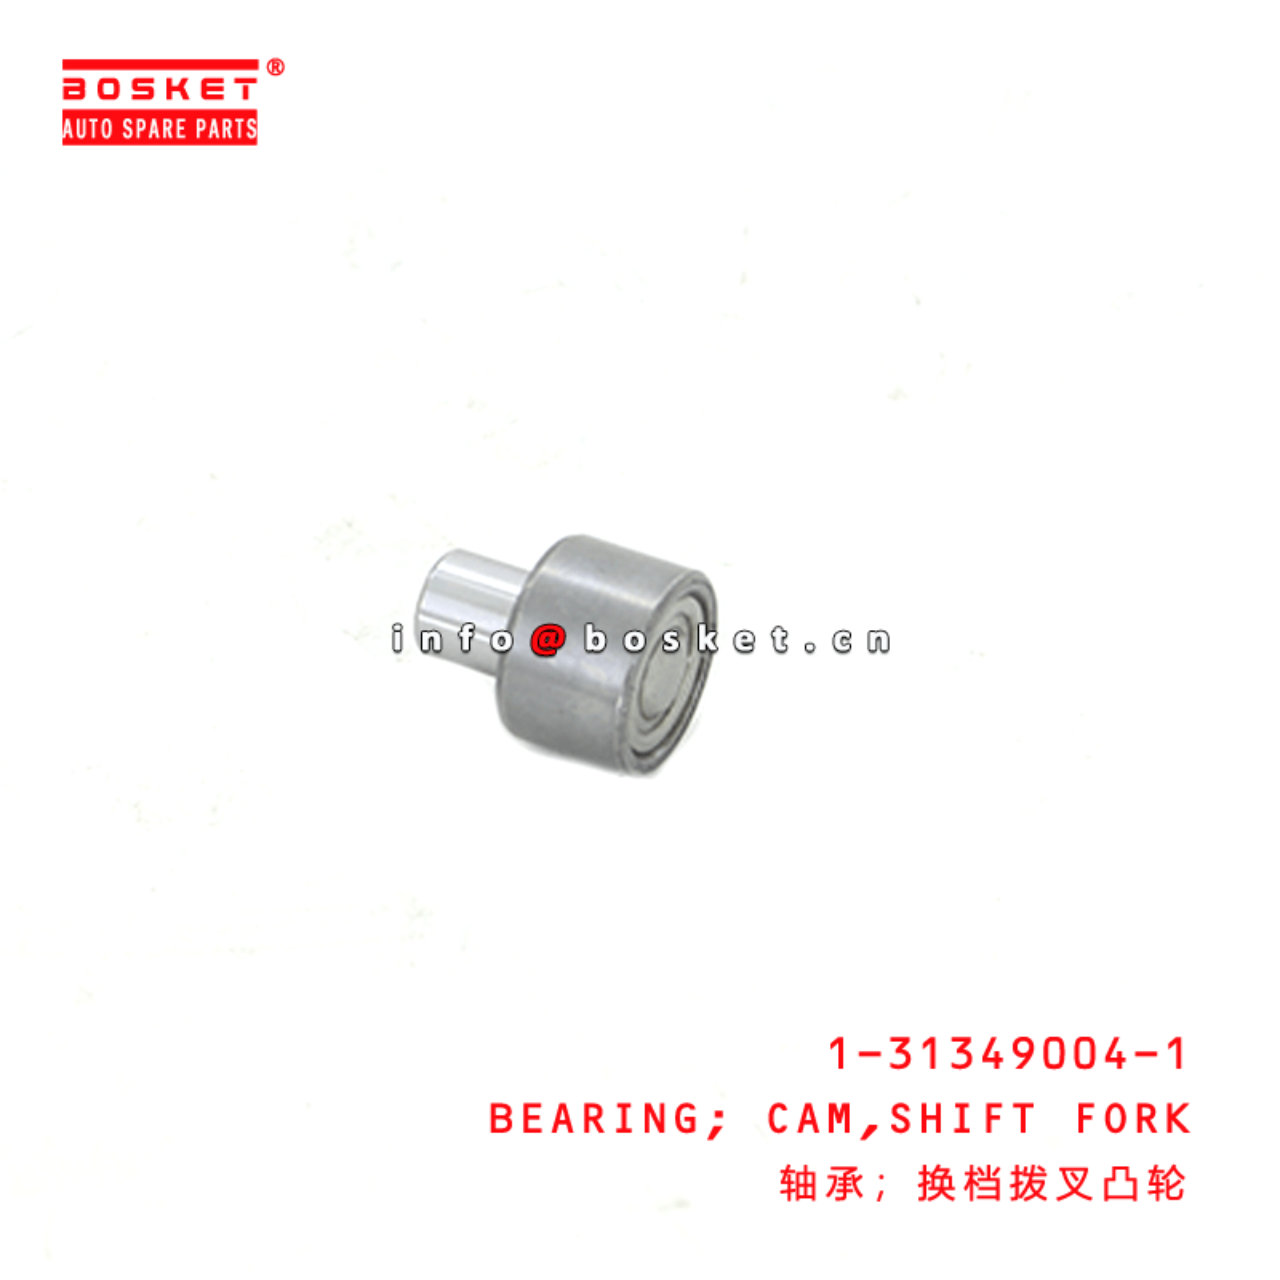  1-31349004-1 Shift Fork Cam Bearing 1313490041 Suitable for ISUZU FVR34 6HK1